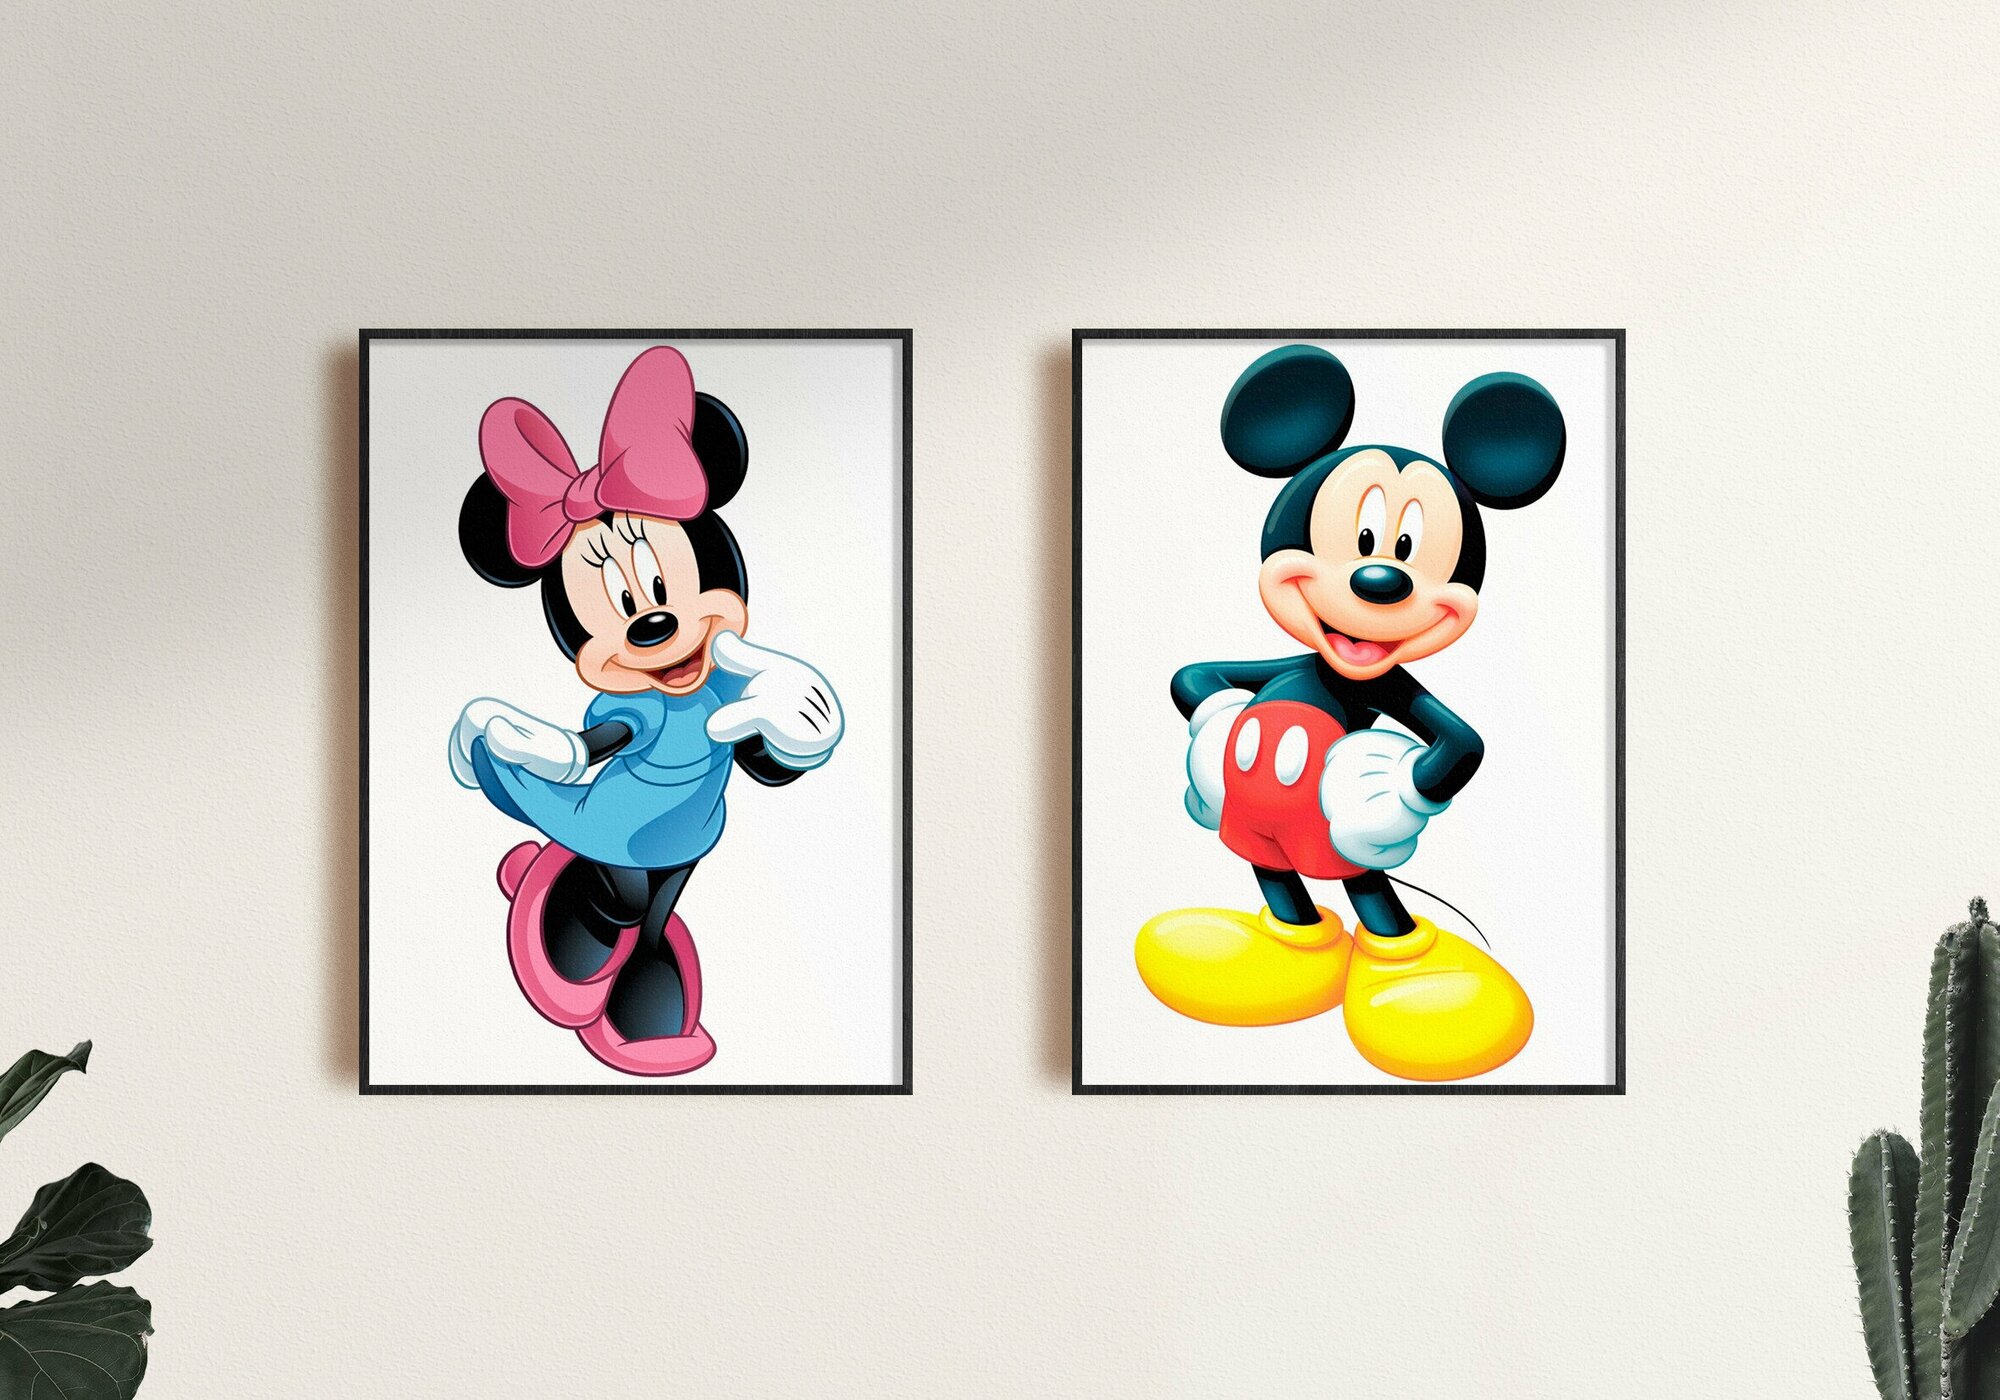 Набор плакатов "Микки Маус" 2 шт. / Набор интерьерных постеров формата А1 (60х80 см) без рамы